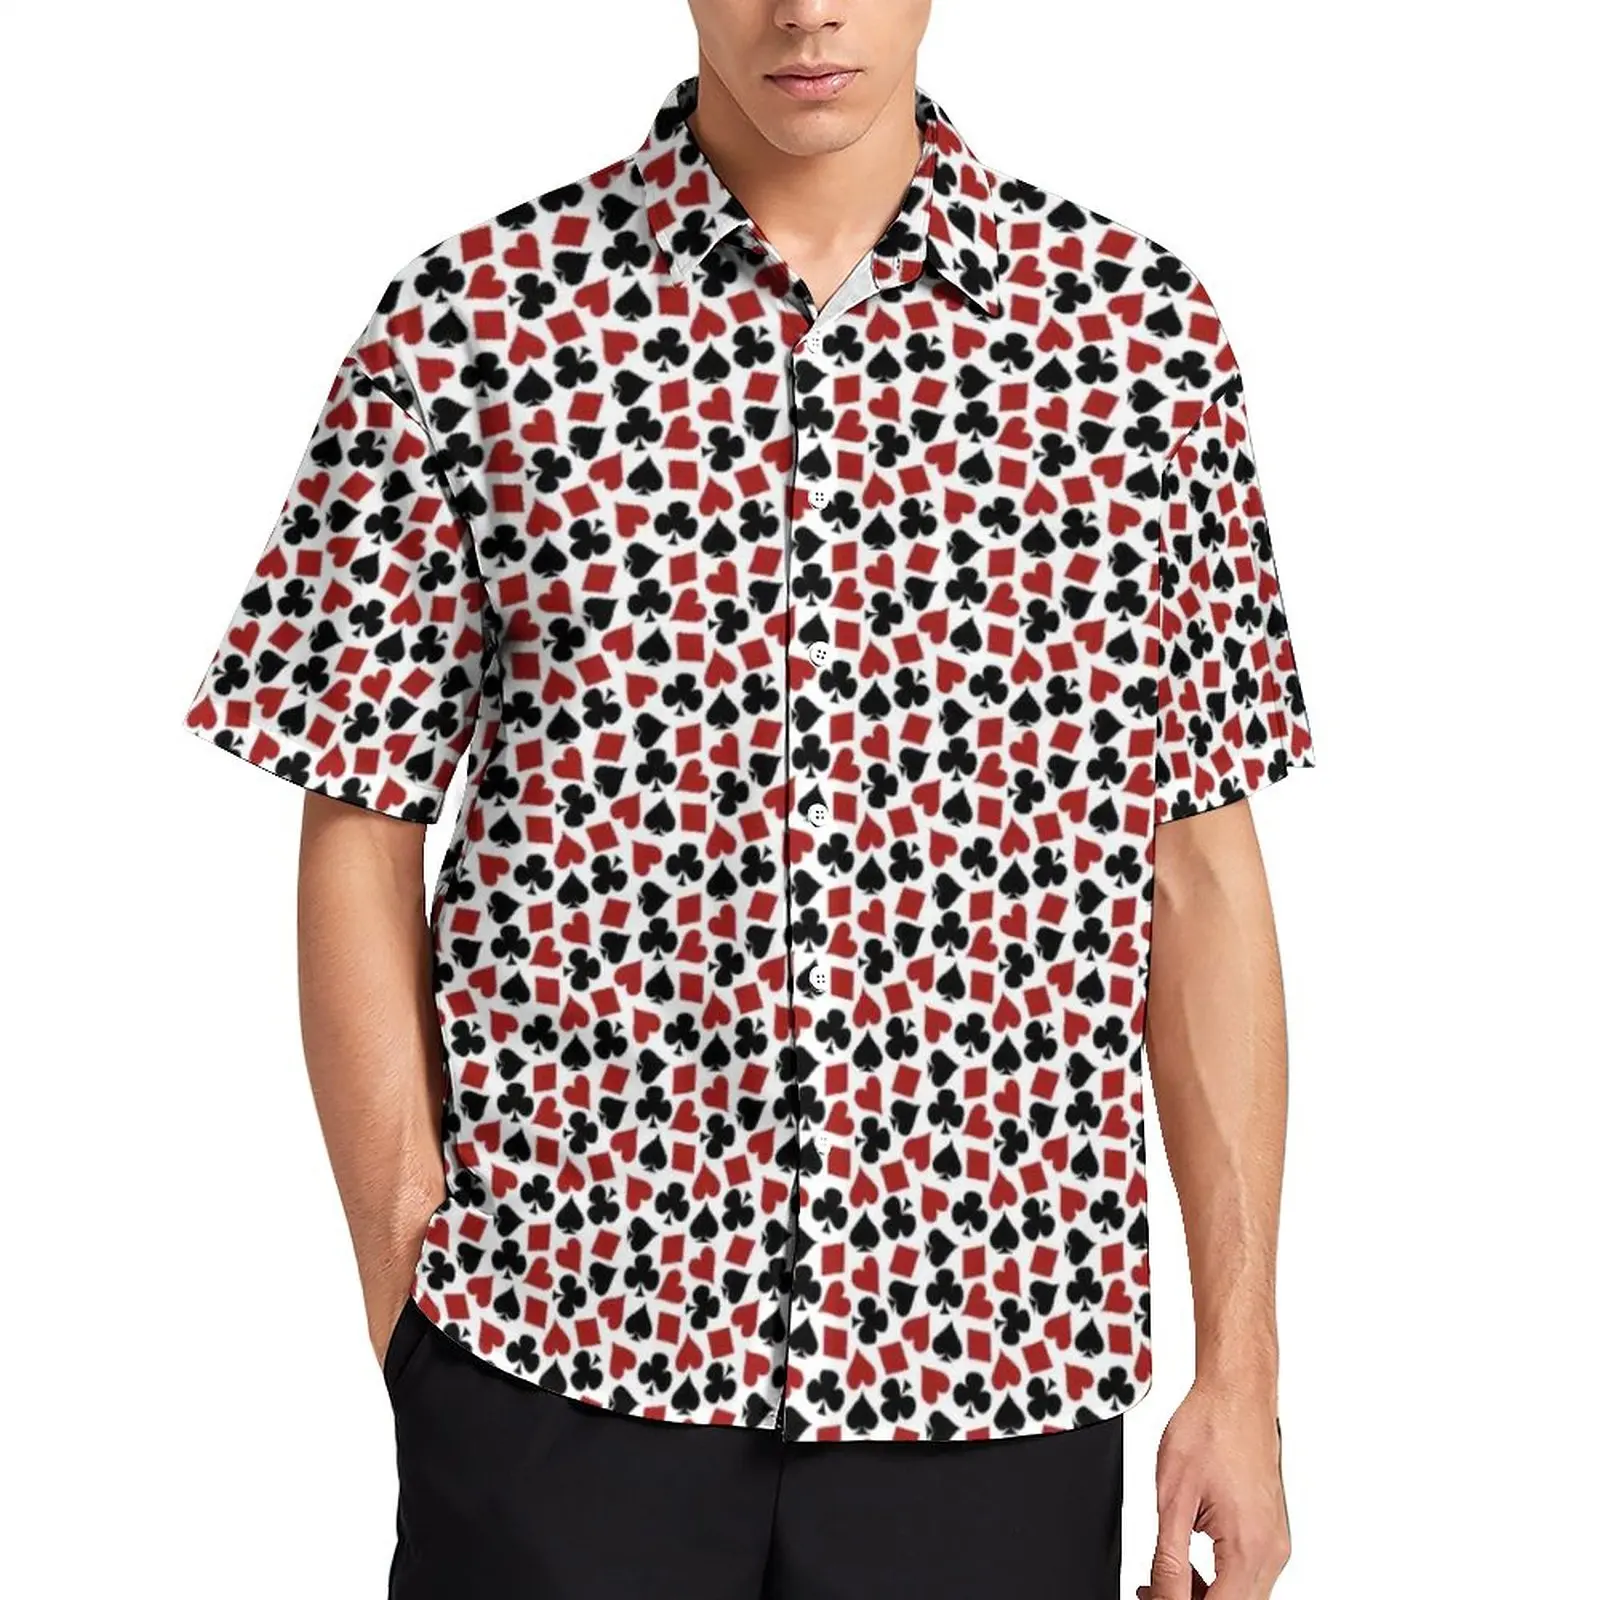 

Гавайская Повседневная рубашка для мужчин, Пляжная блузка в стиле ретро, с принтом игральных карт, забавных сердец, дизайнерская одежда с ко...